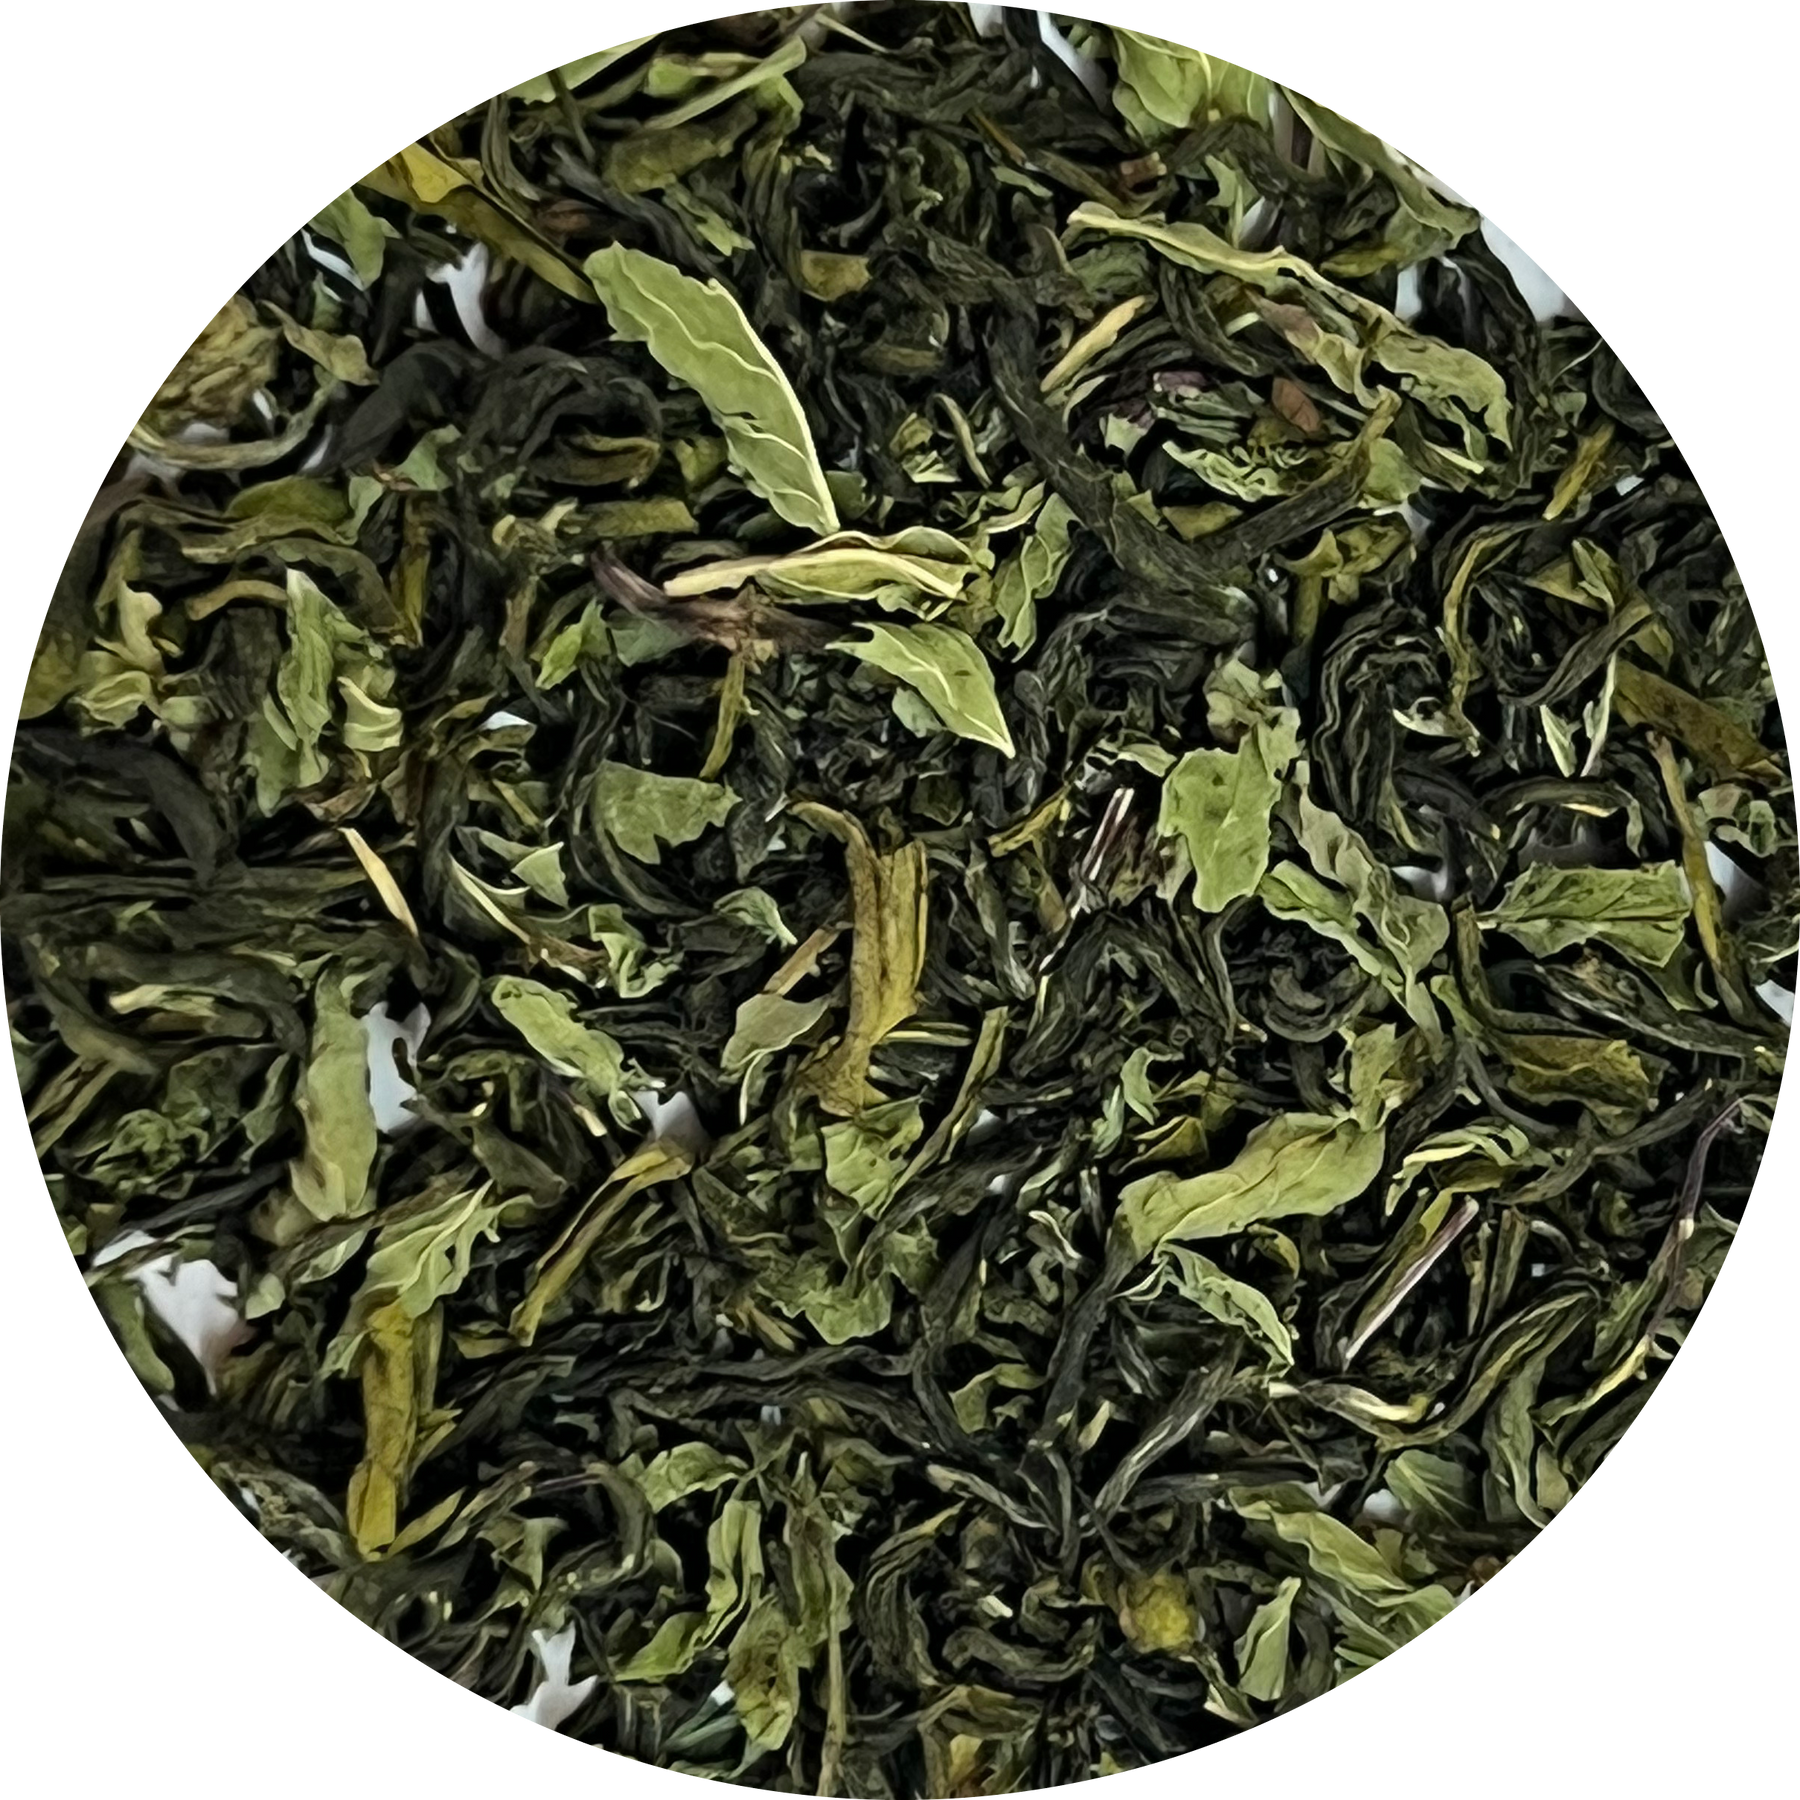 Mint tulsi green tea